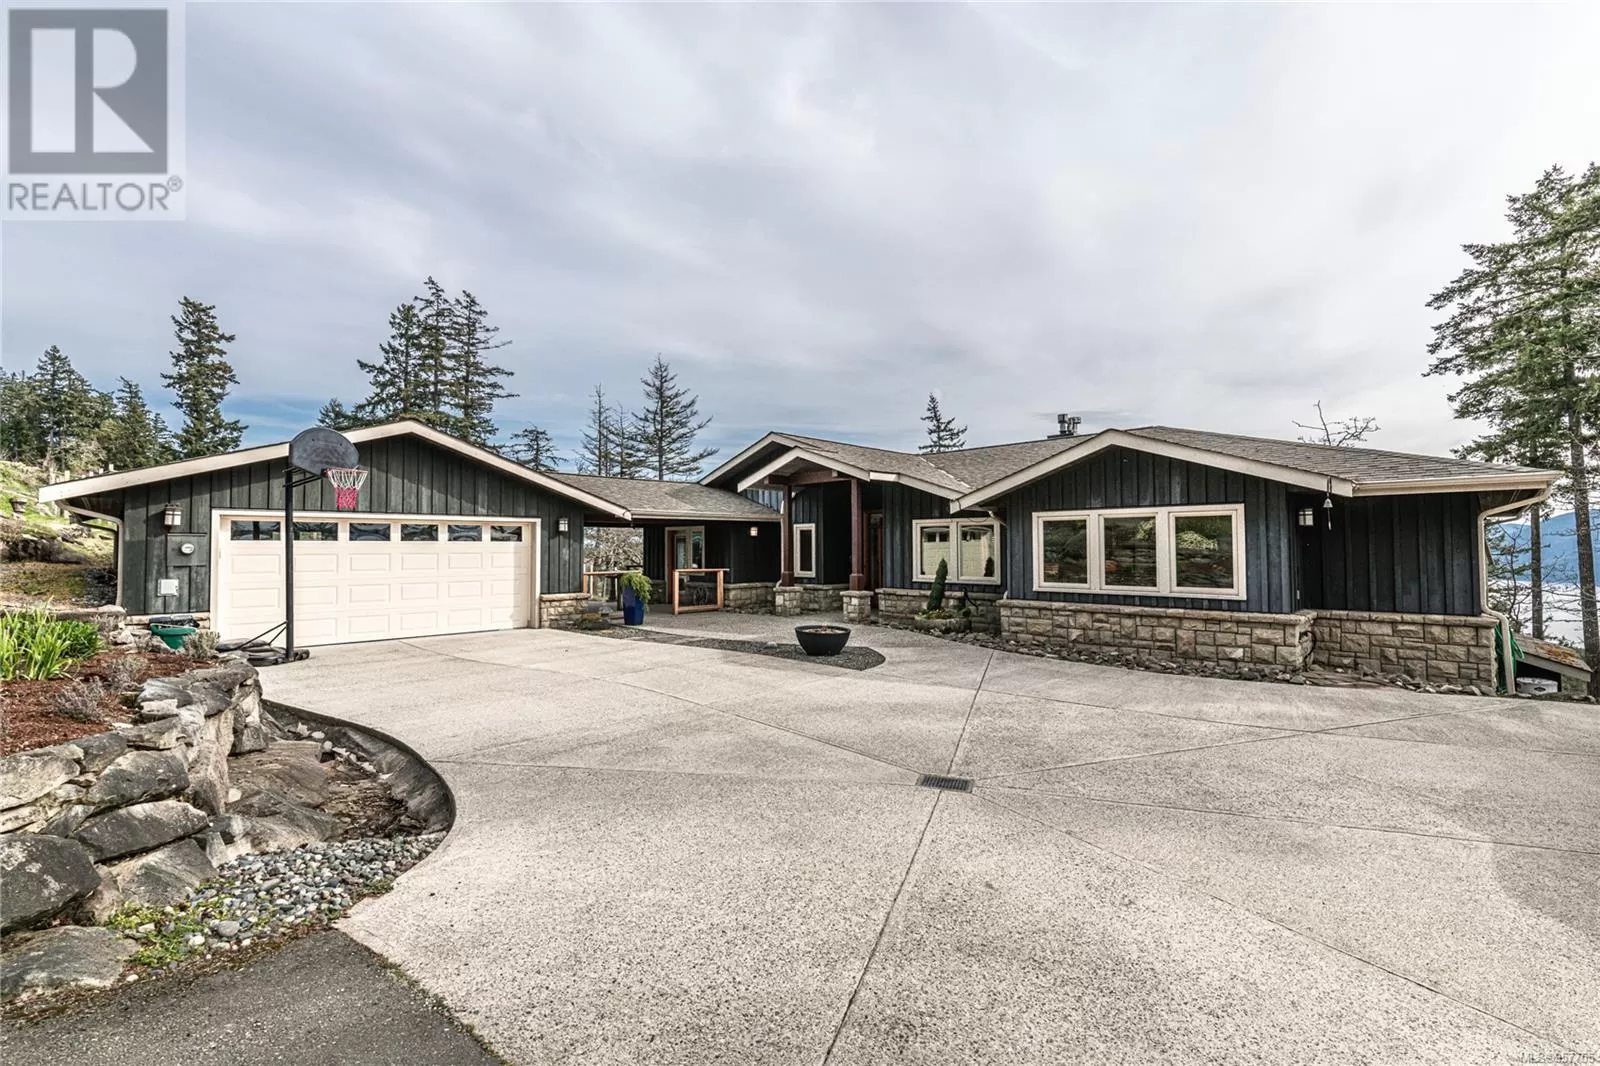 House for rent: 285 & 289 Canvasback Pl, Salt Spring, British Columbia V8K 2W5